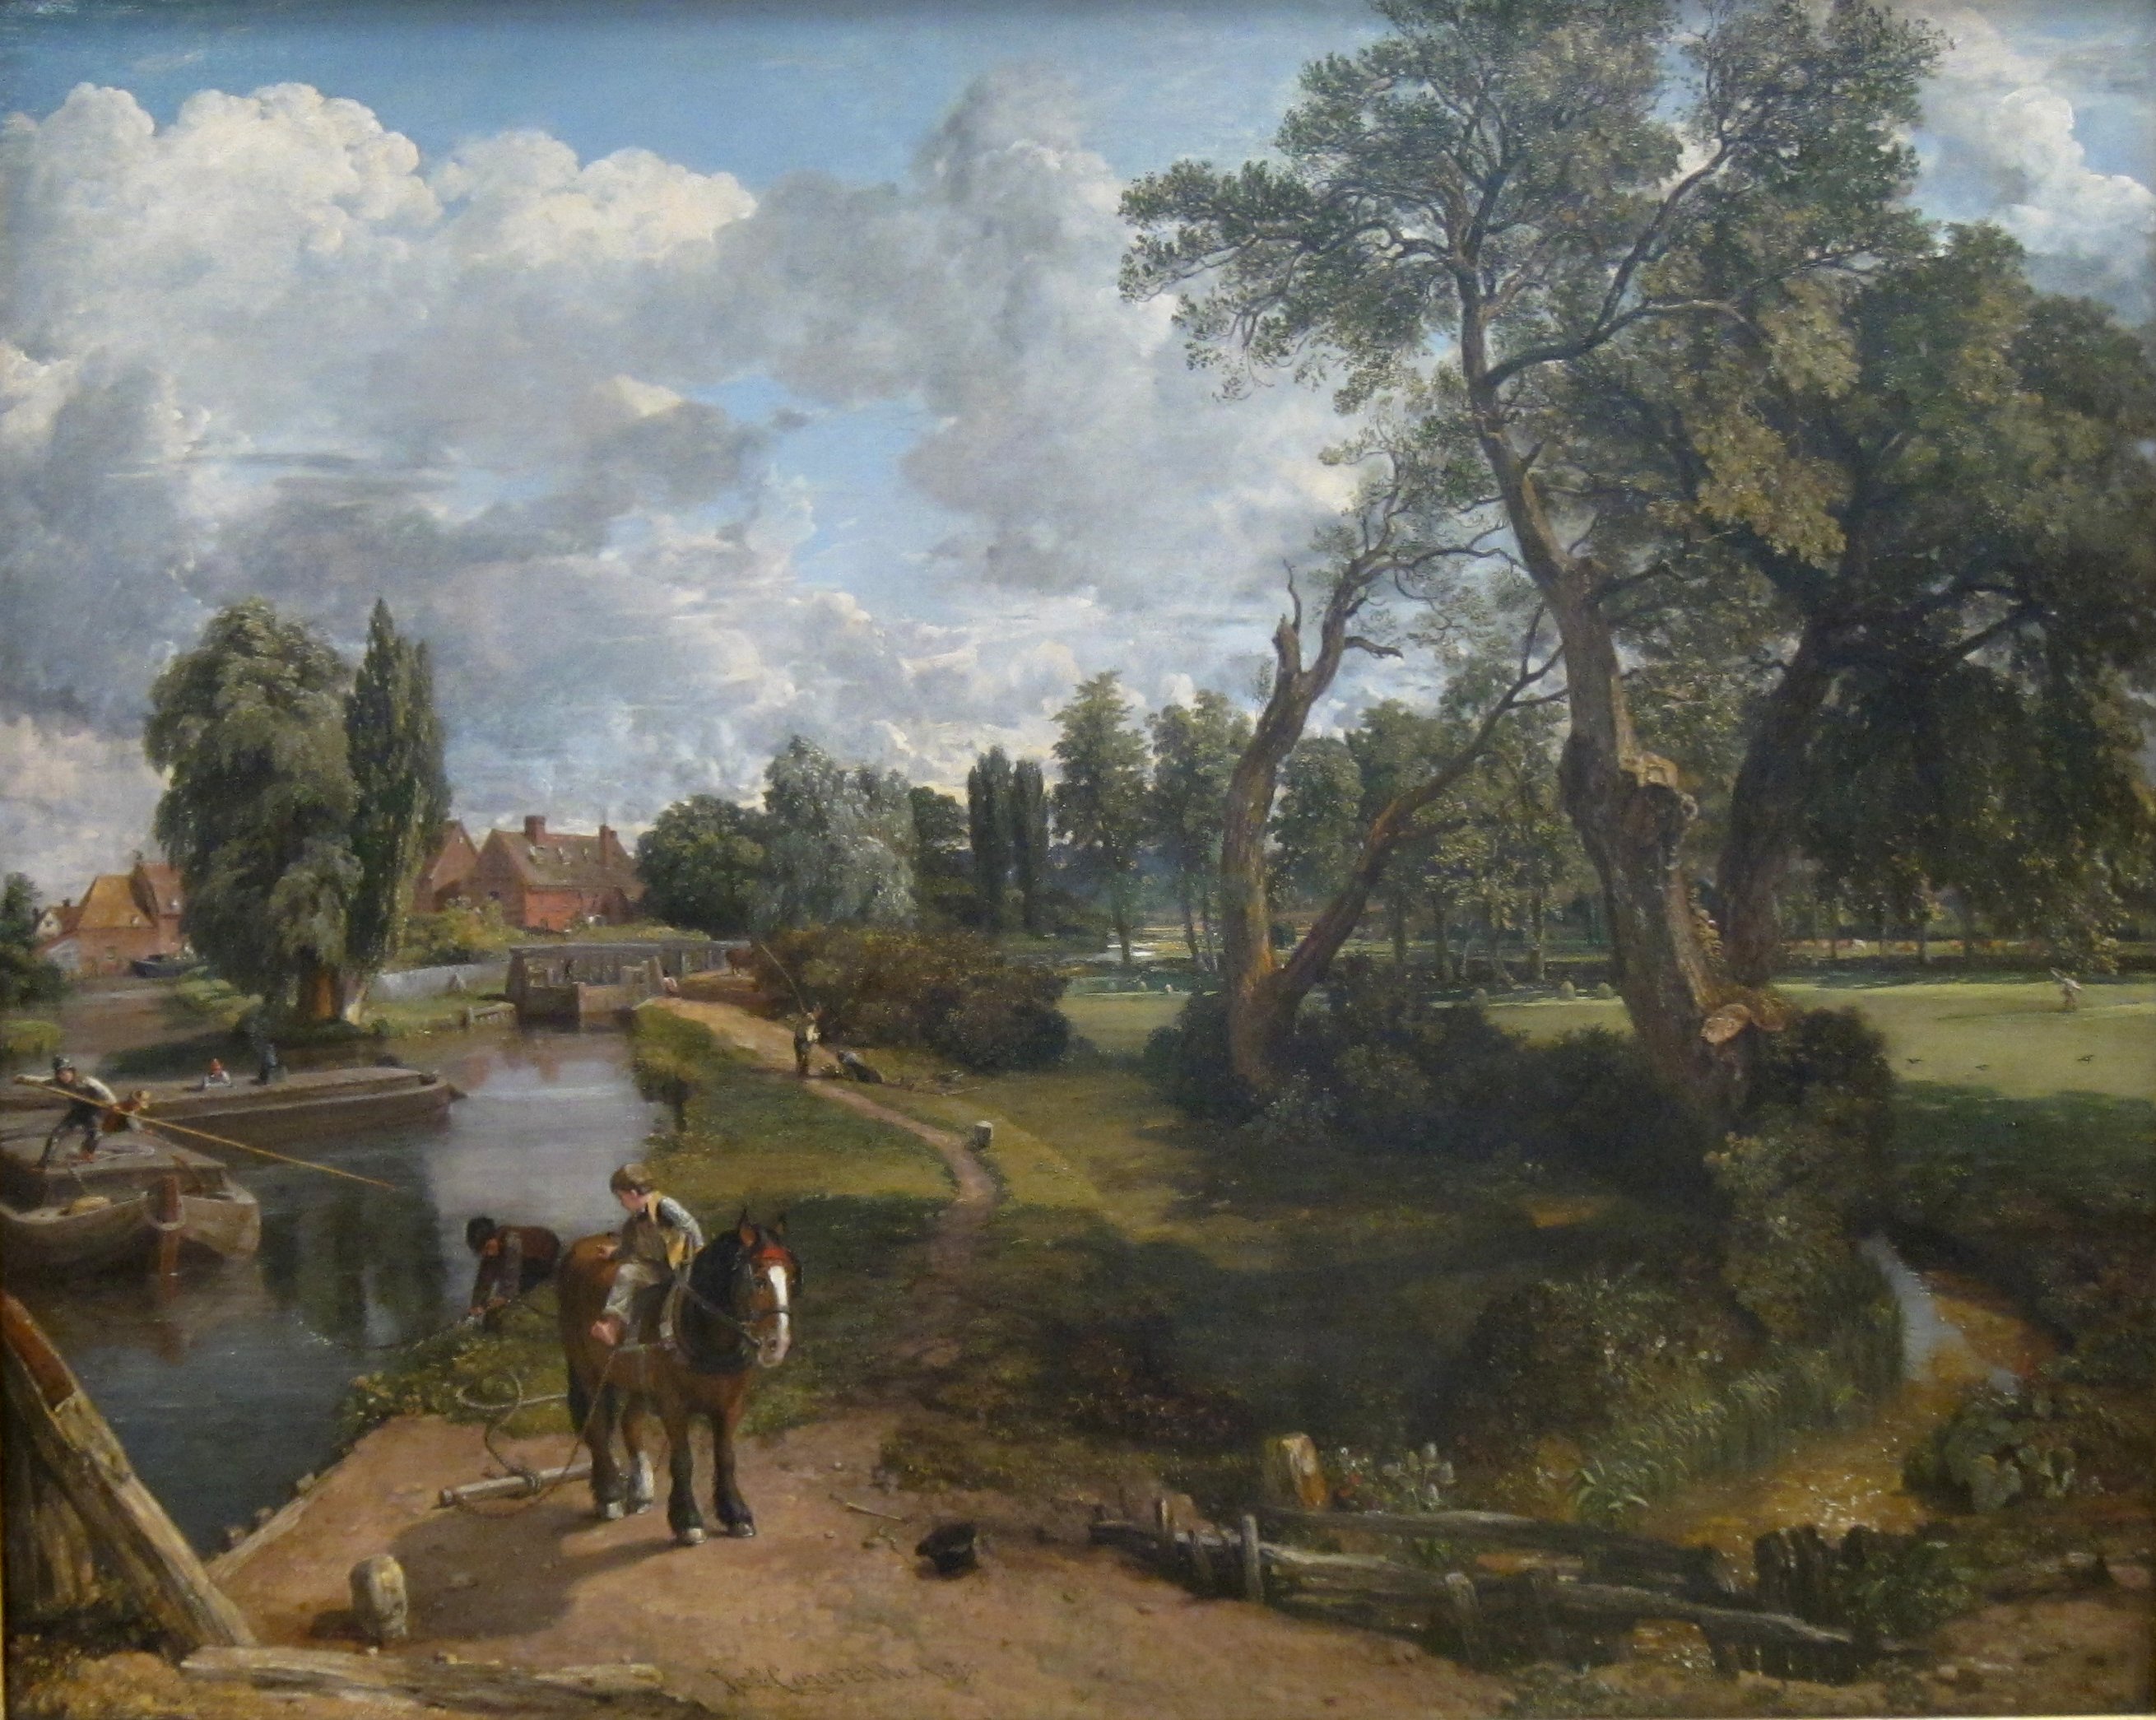 Moulin de Flatford ("Scène sur une rivière navigable") by John Constable - 1816-17 - 101.6 x 127 cm 